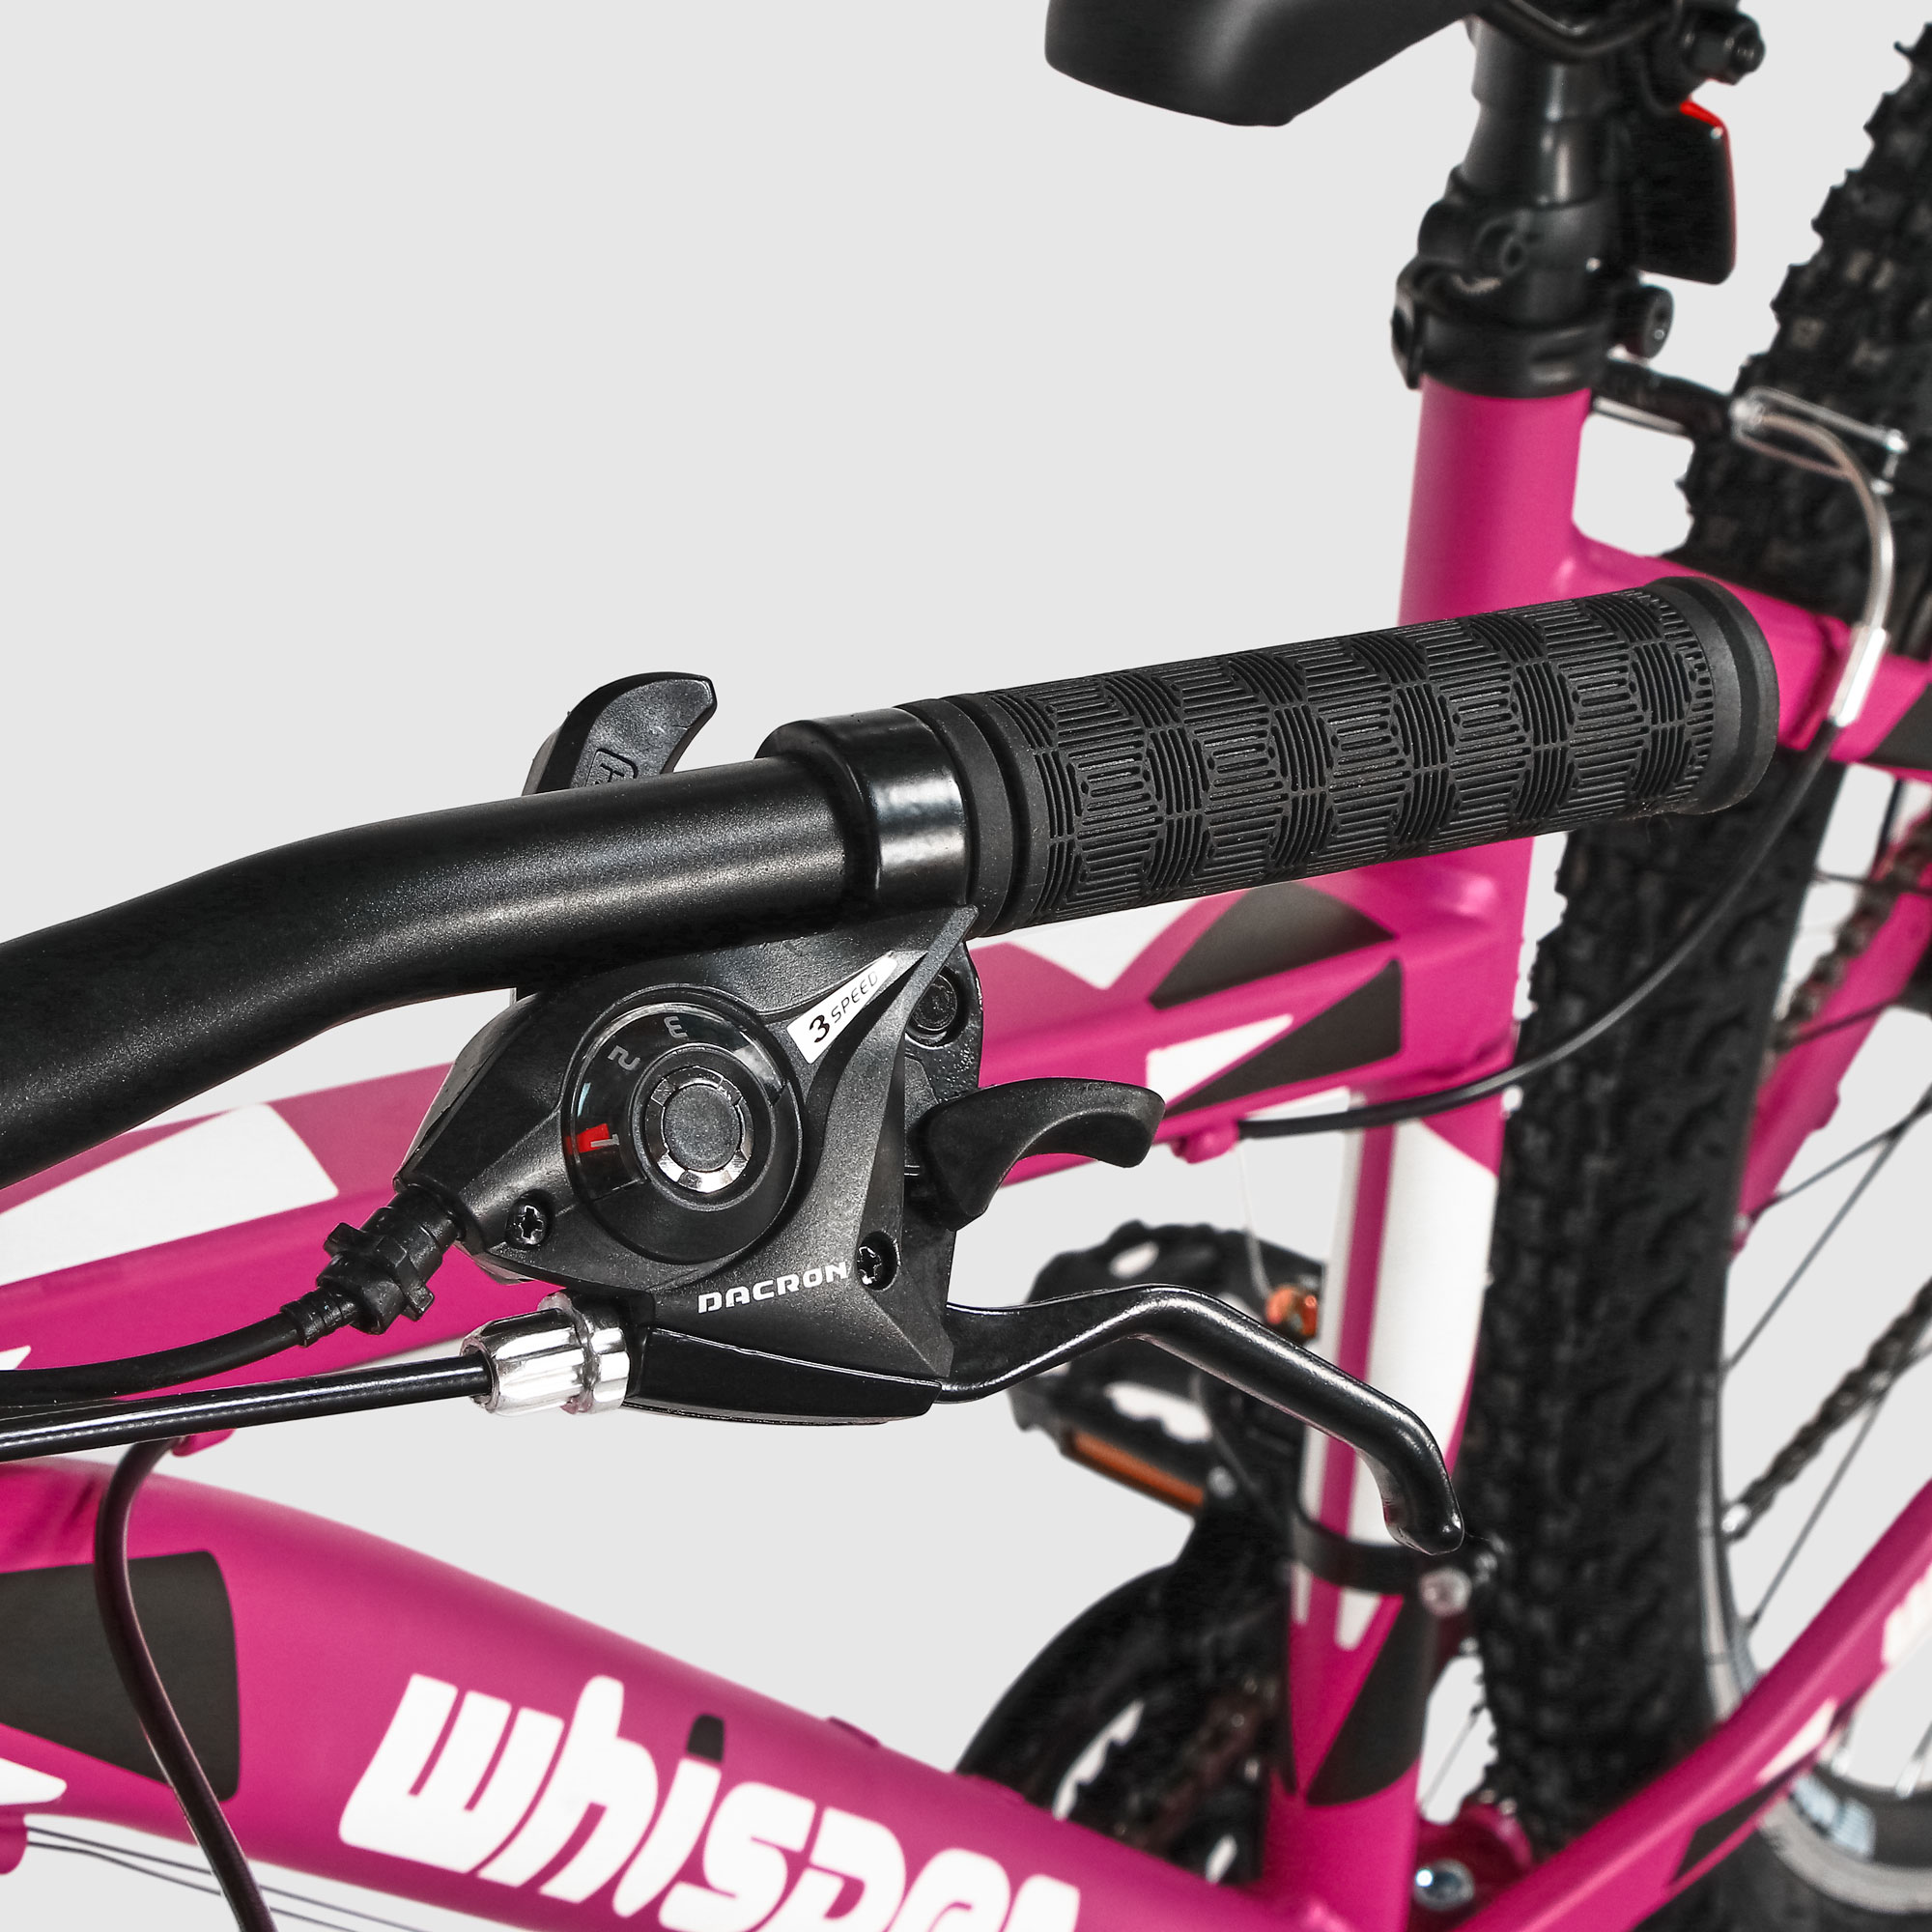 Велосипед Corelli Whisper женский 26 дюймов 21 скорость розовый Жесткая стальная вилка - фото 9